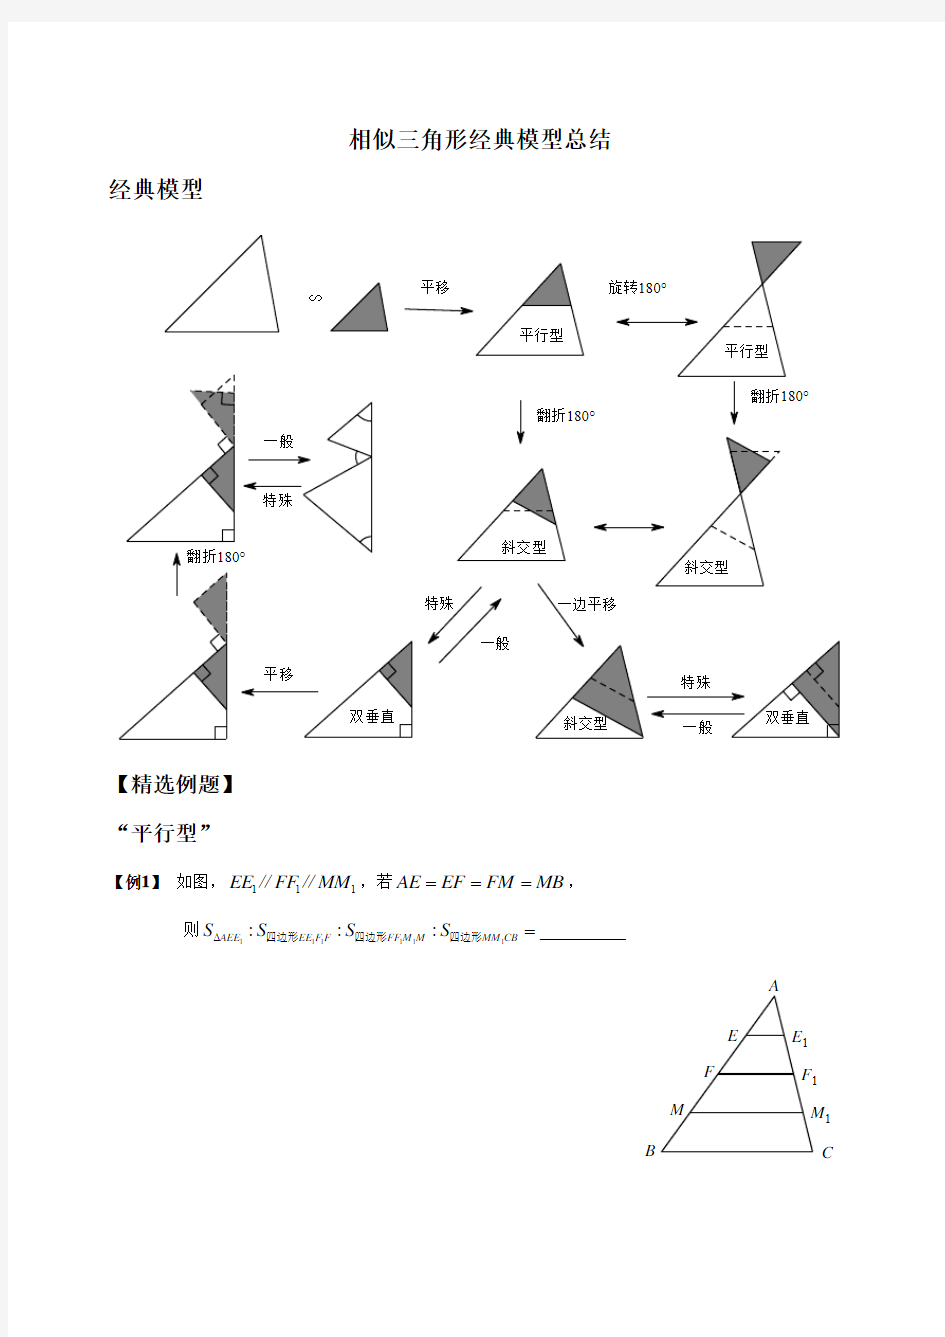 相似三角形经典模型总结及例题分类